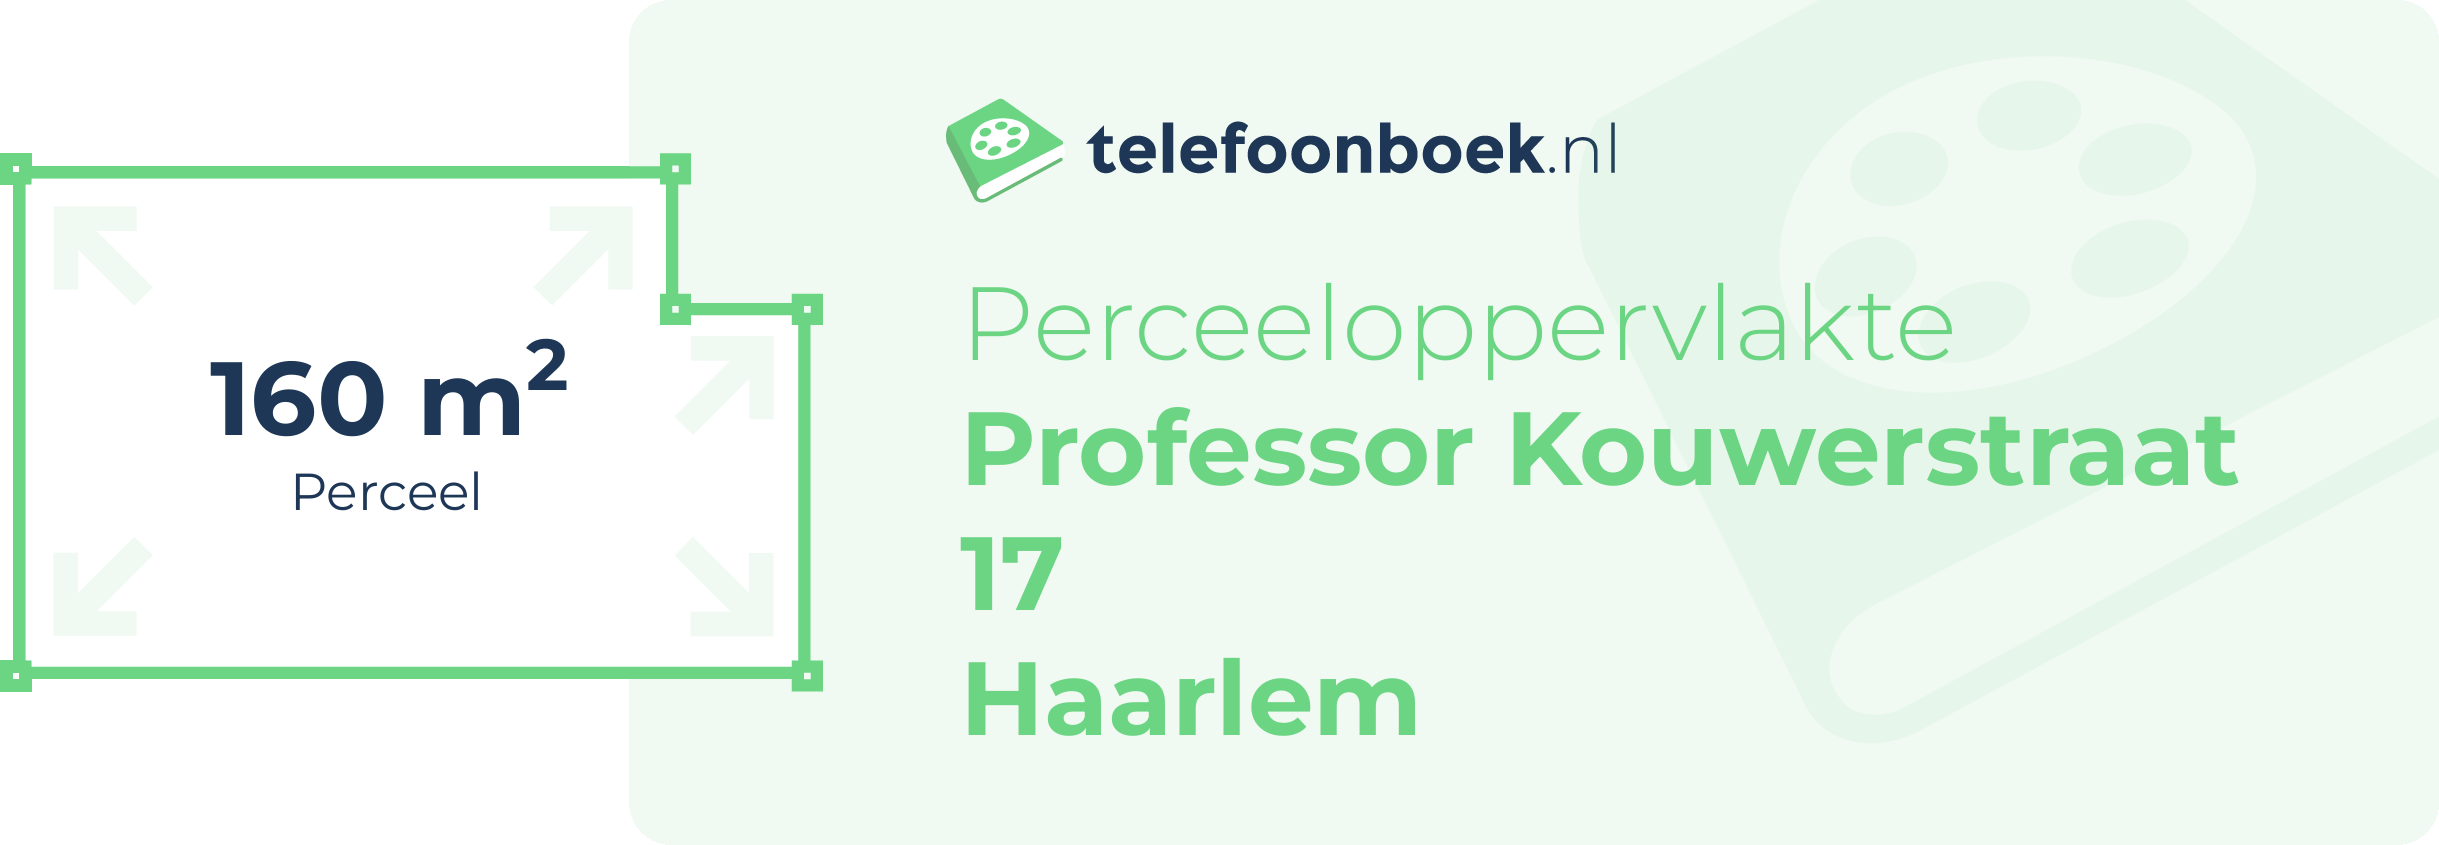 Perceeloppervlakte Professor Kouwerstraat 17 Haarlem